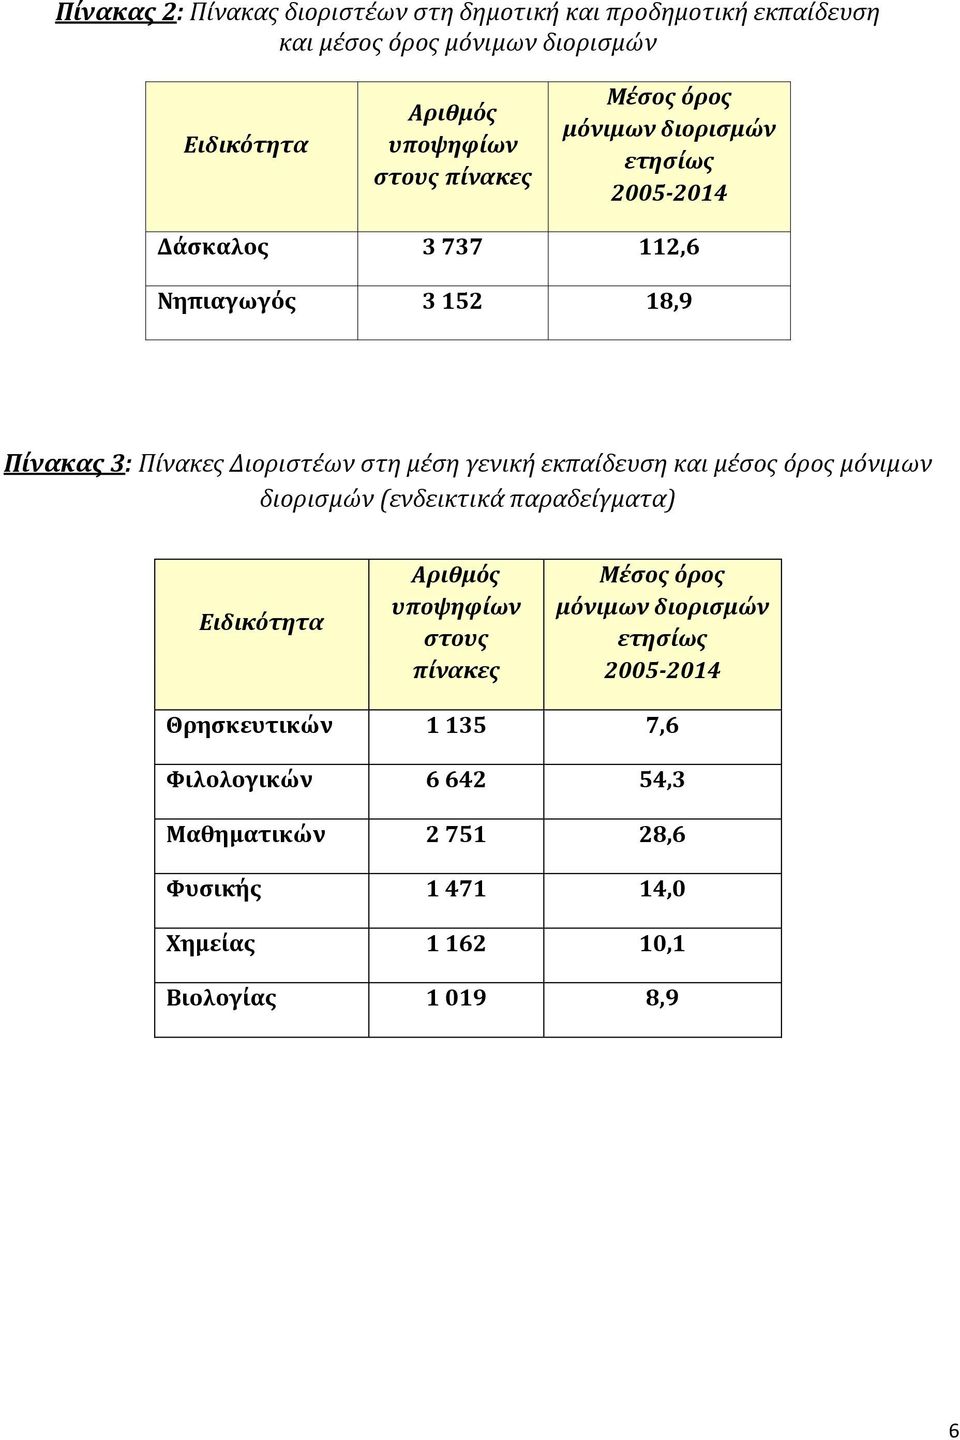 γενική εκπαίδευση και μέσος όρος μόνιμων διορισμών (ενδεικτικά παραδείγματα) Ειδικότητα Αριθμός υποψηφίων στους πίνακες Μέσος όρος μόνιμων